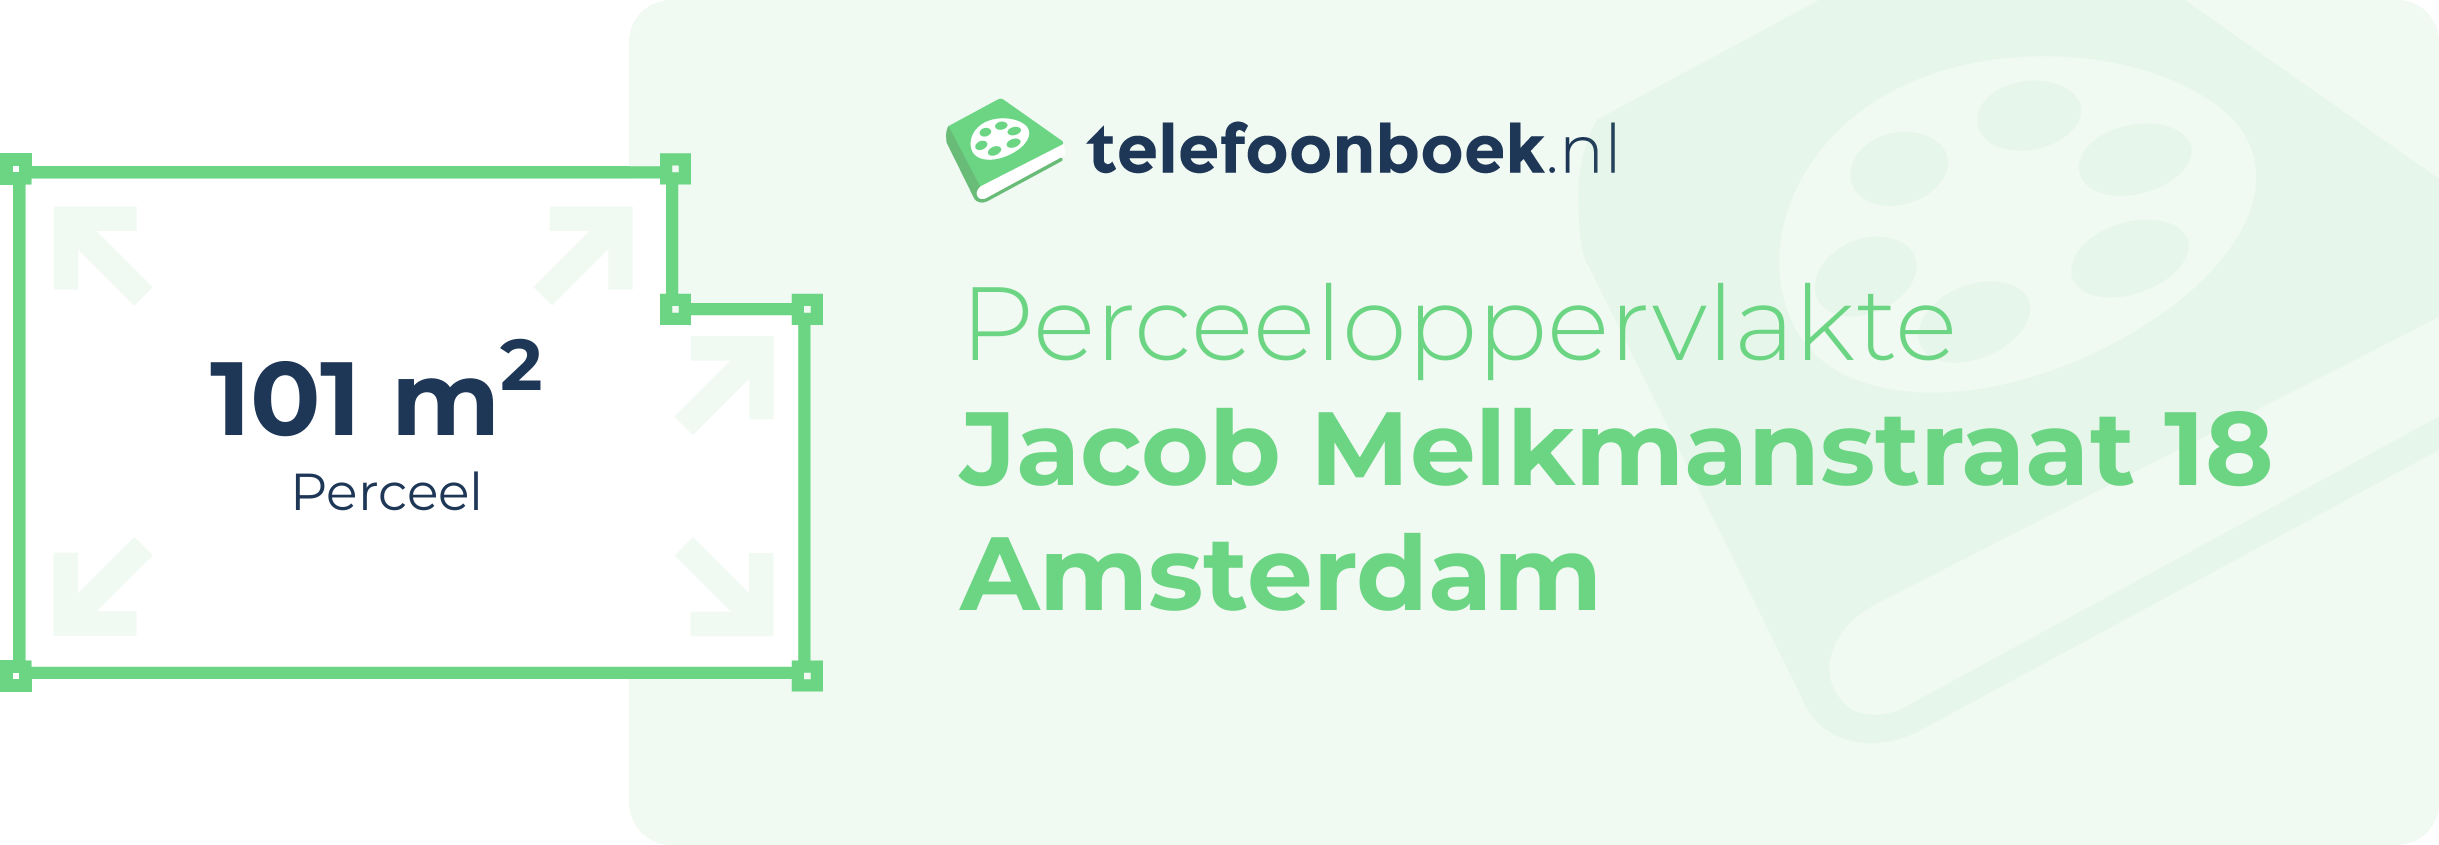 Perceeloppervlakte Jacob Melkmanstraat 18 Amsterdam